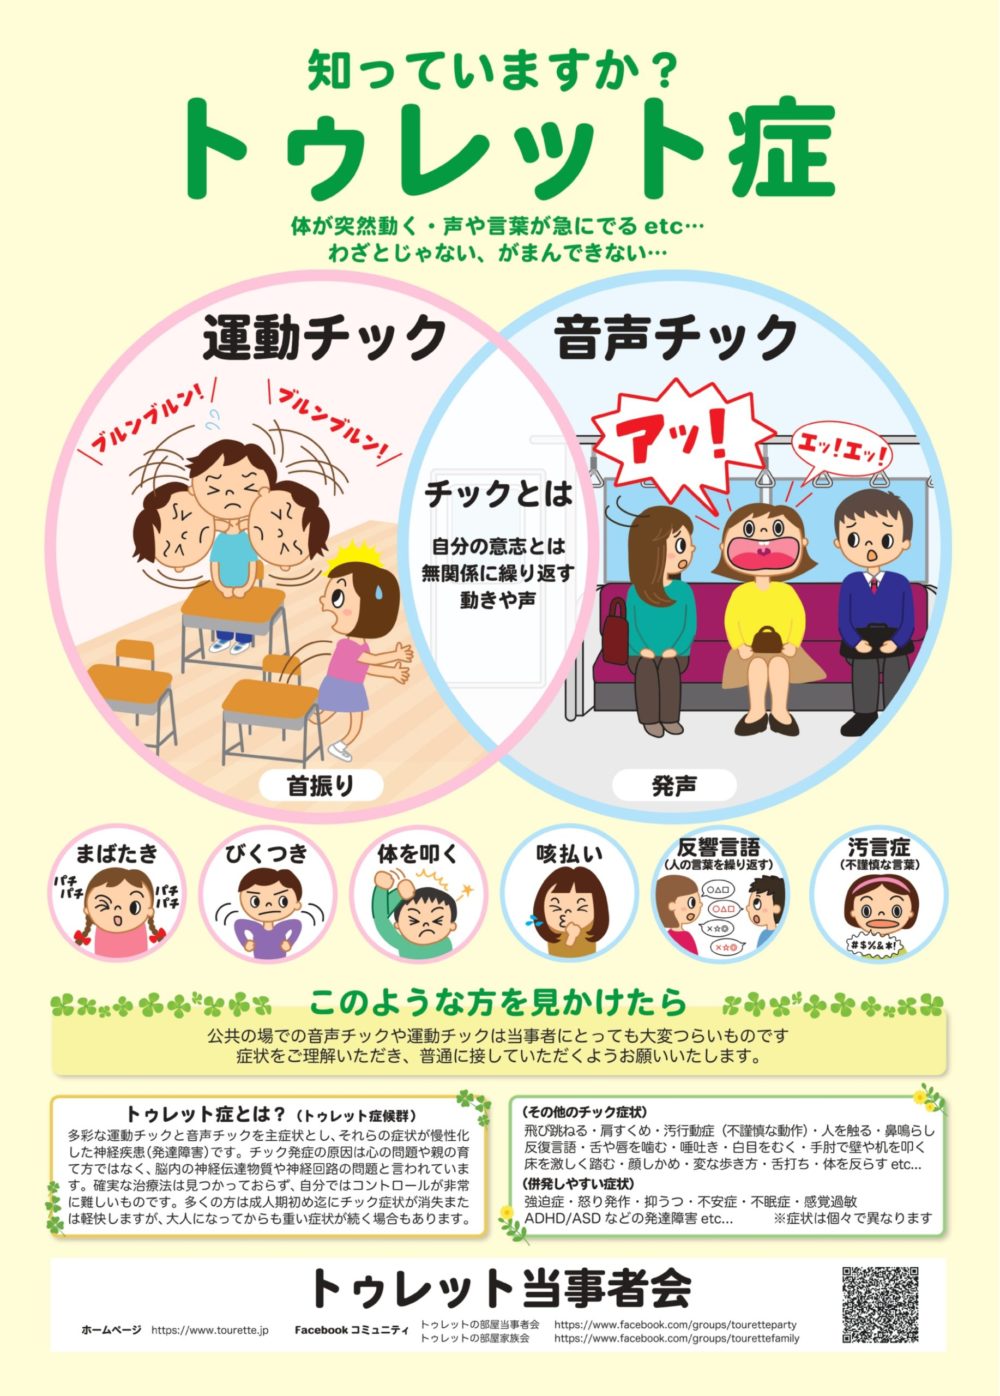 チックをする子にはわけがある―トゥレット症候群の正しい理解と対応のために (子育てと健康シリーズ)／日本トゥレット協会